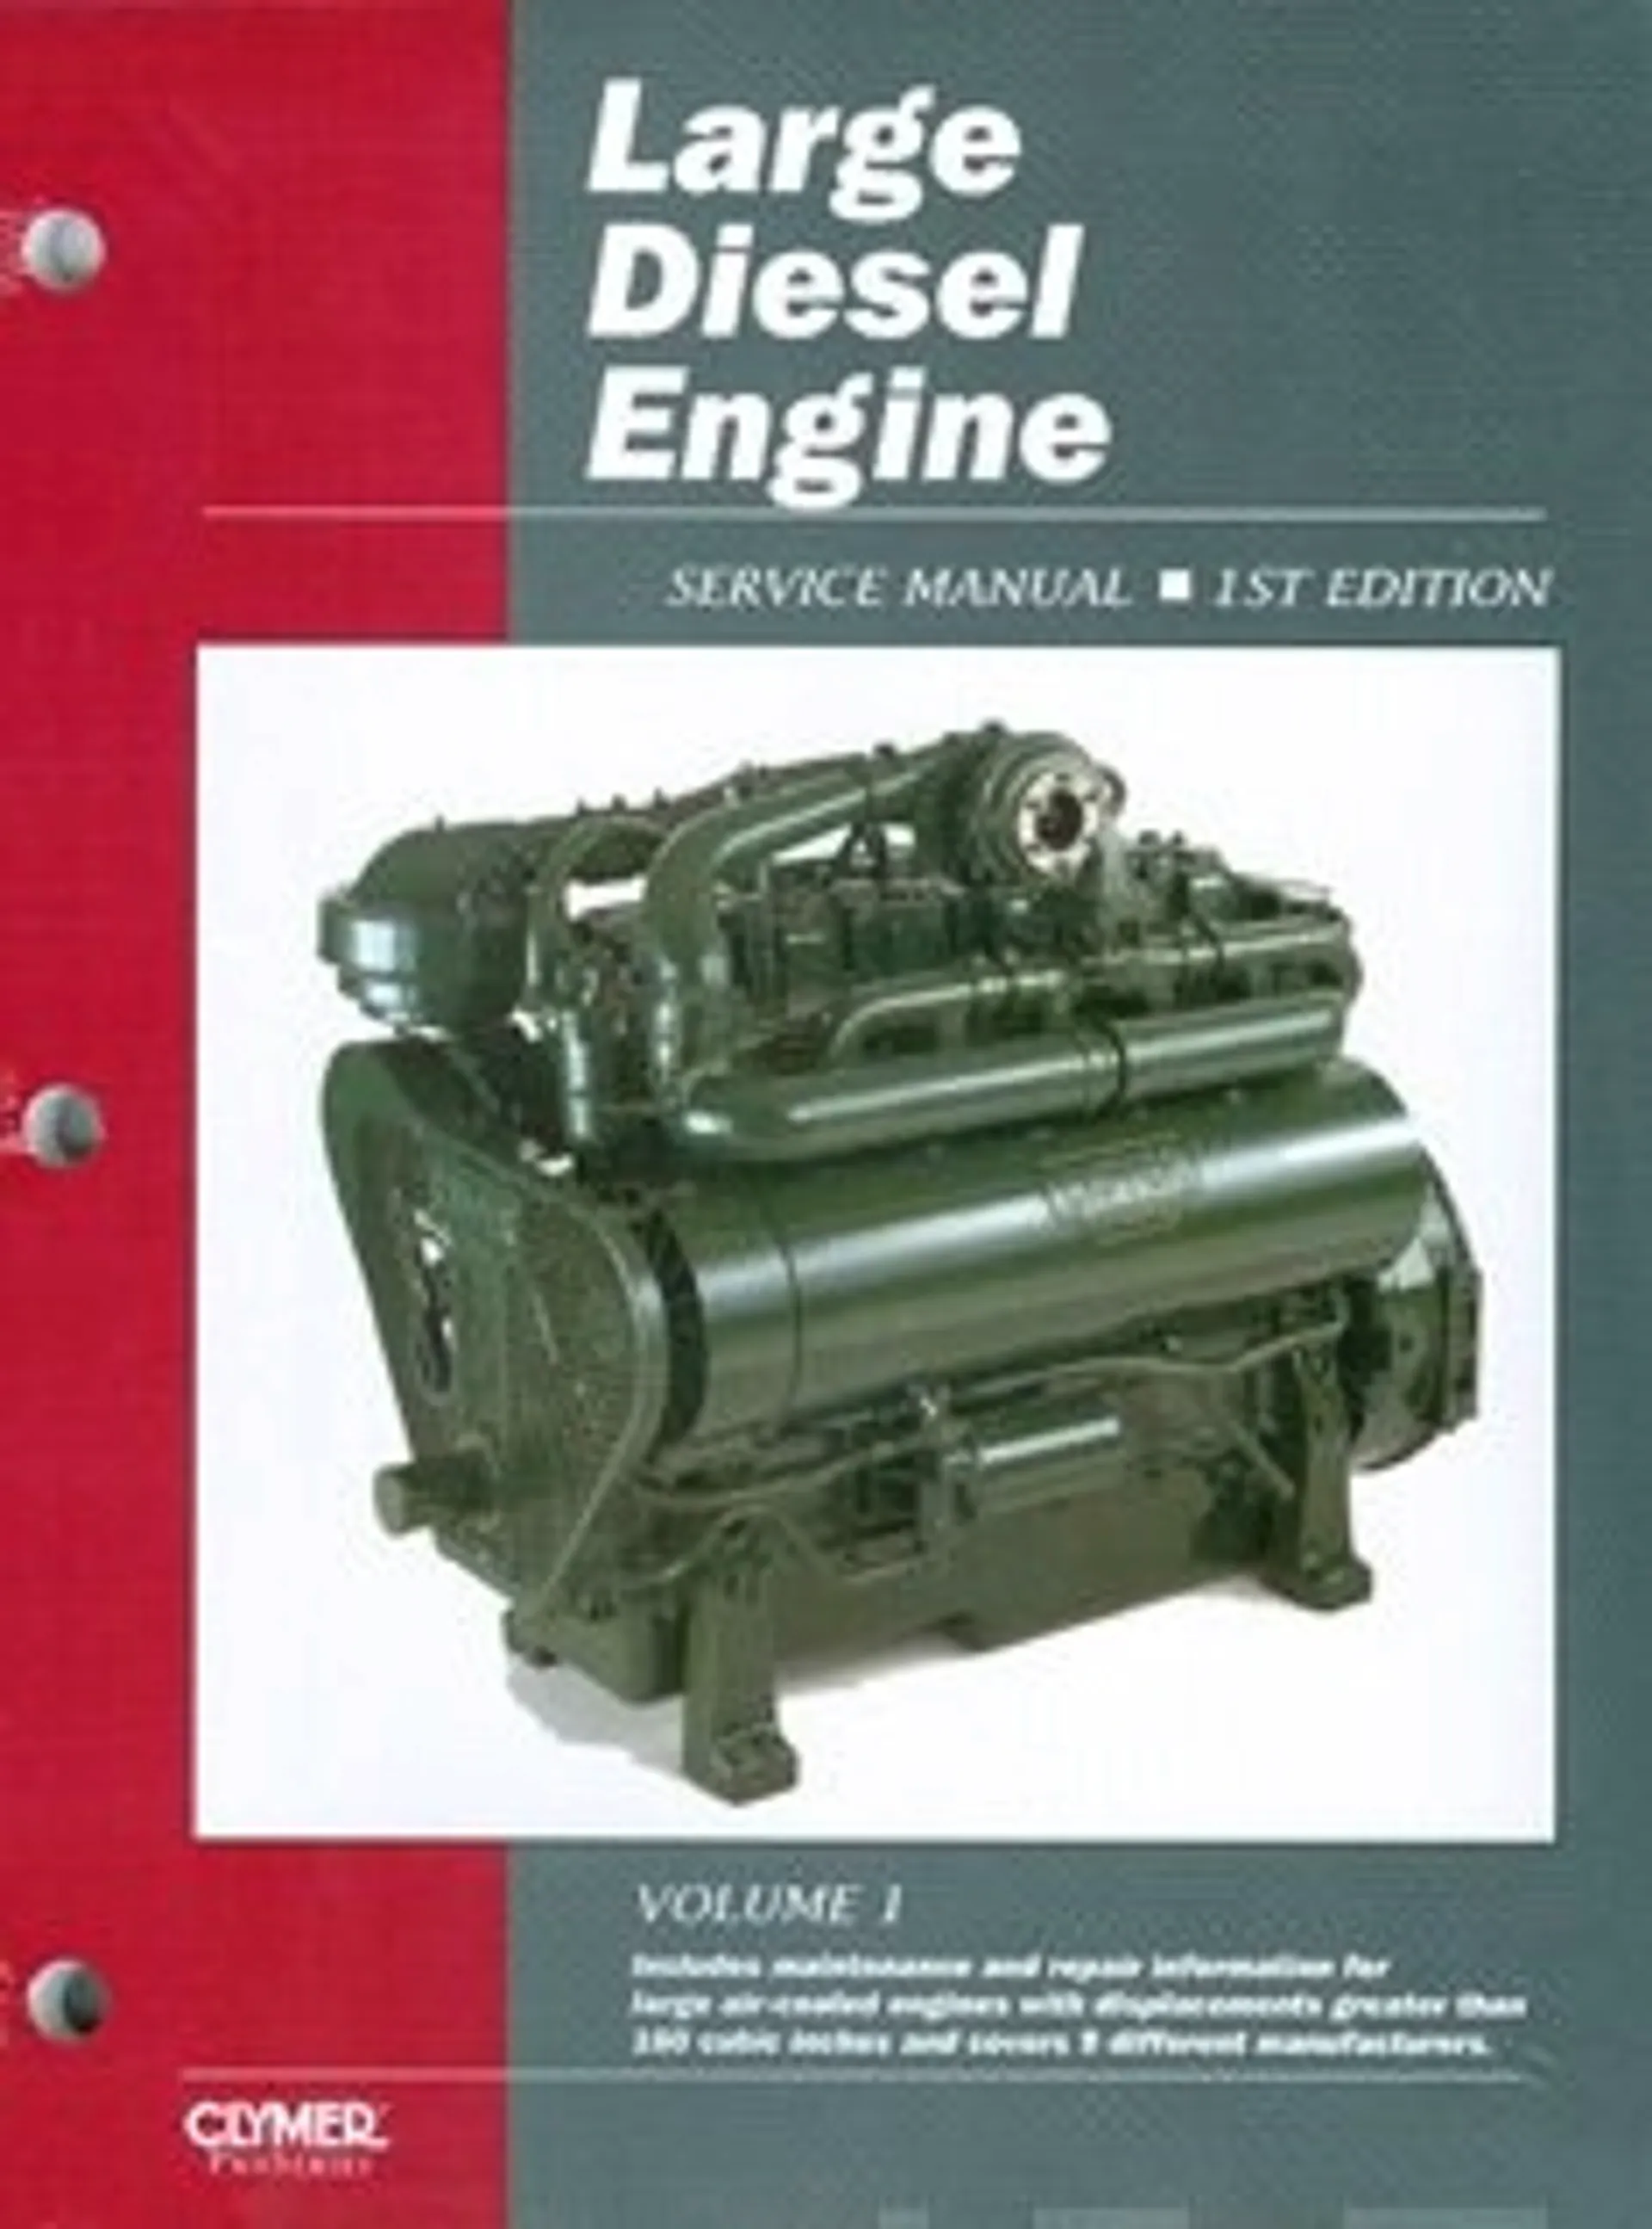 Large diesel engine